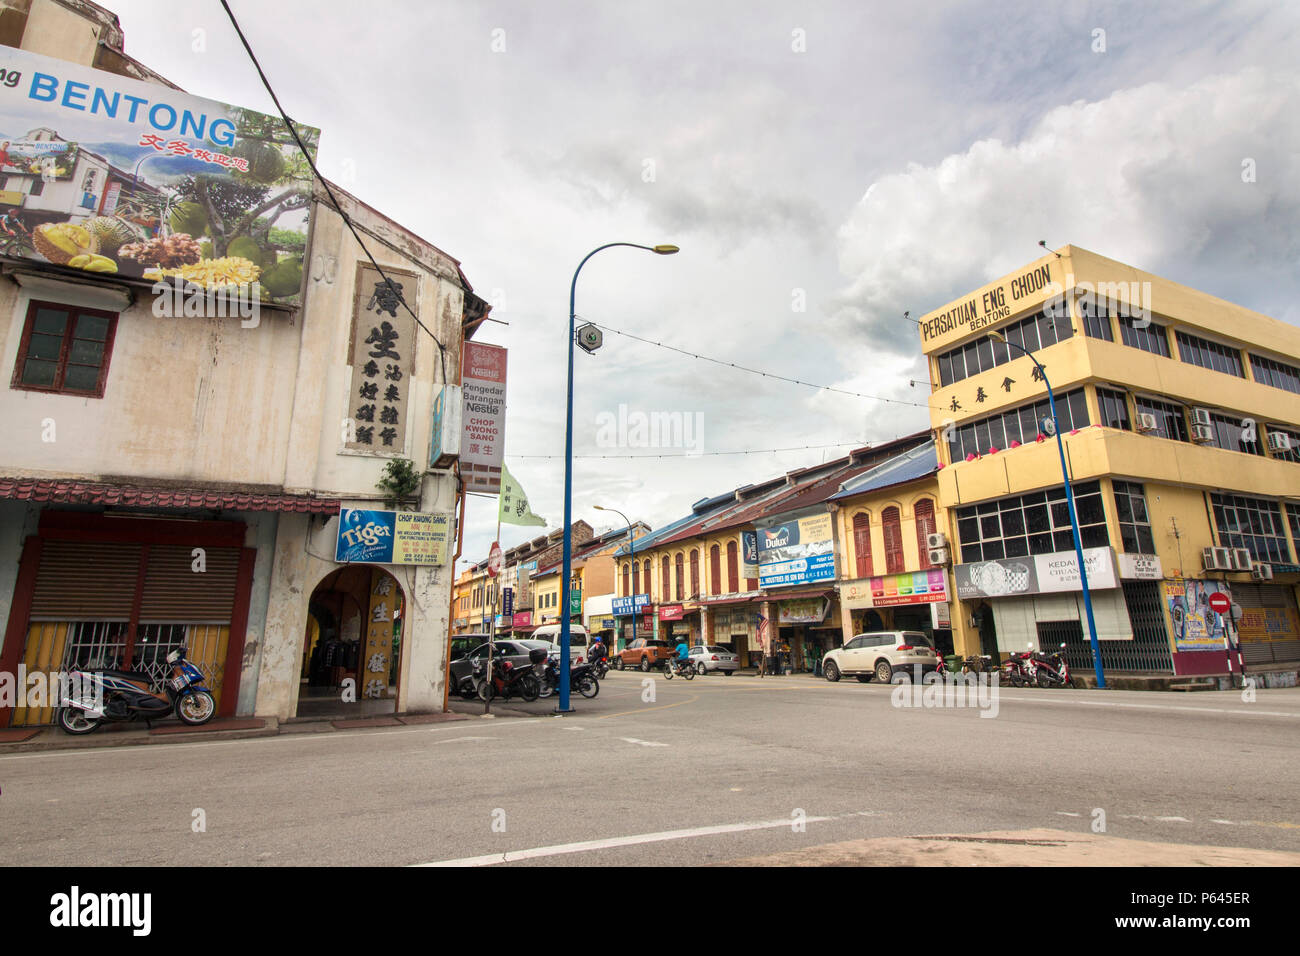 La strada di Bentong con il vecchio vintage shop coloniale molto in vista, una piccola città nel lato ovest della Malesia, famoso con Musang re durian Foto Stock